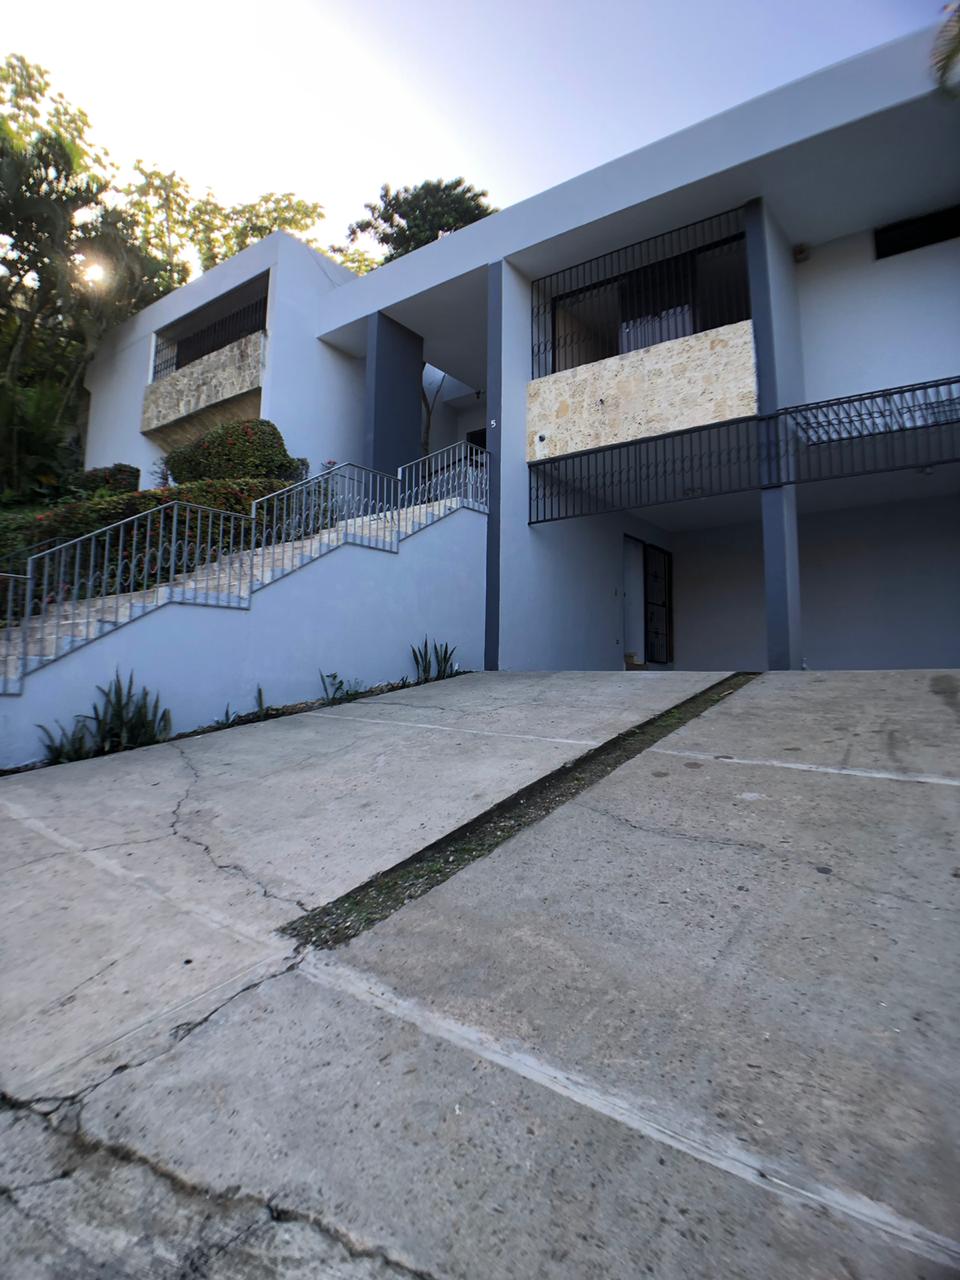 Casa amplia en alquiler Arroyo Hondo residencial tranquilo Foto 7168035-4.jpg